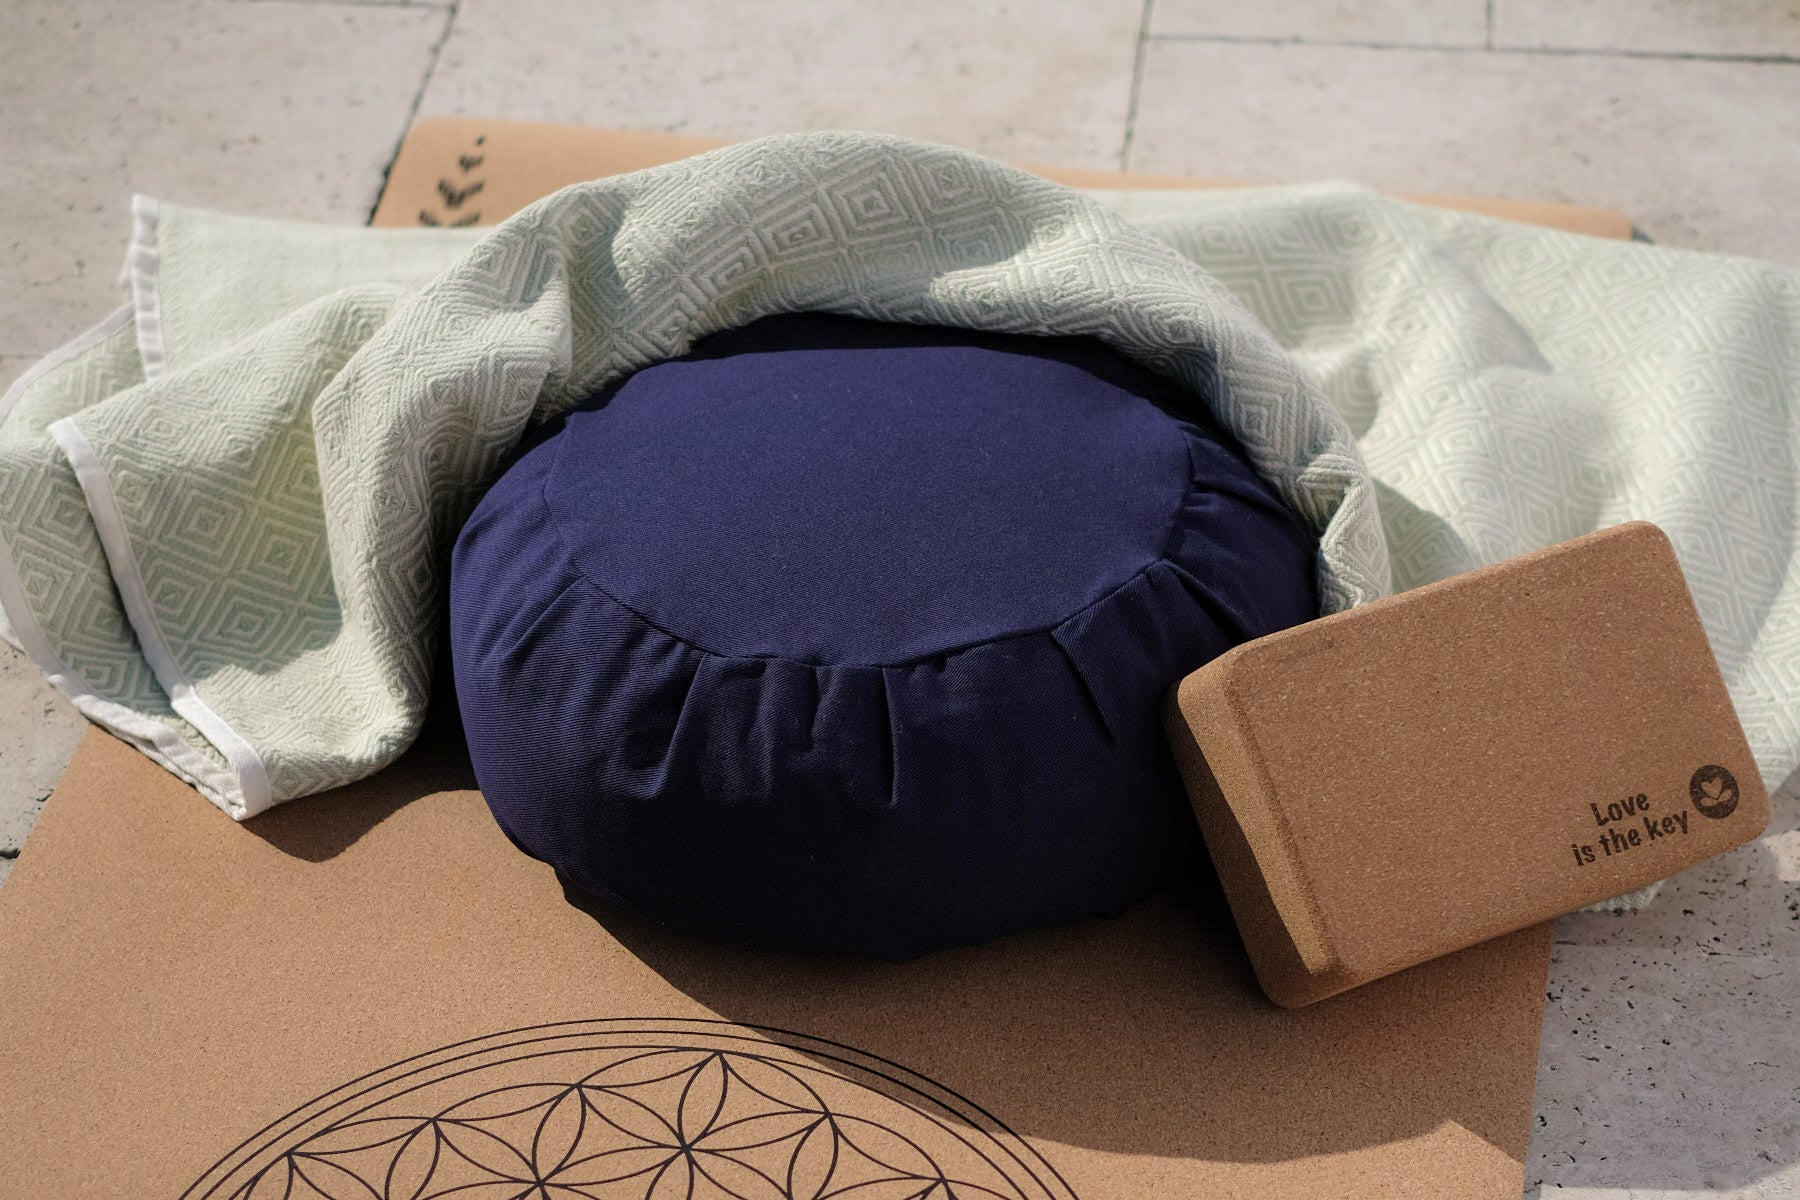 Bellissimi cuscini da meditazione in tinta unita, super confortevoli. I nostri cuscini Zafu Yoga sono amorevolmente cuciti a mano e realizzati in resistente tessuto di cotone.